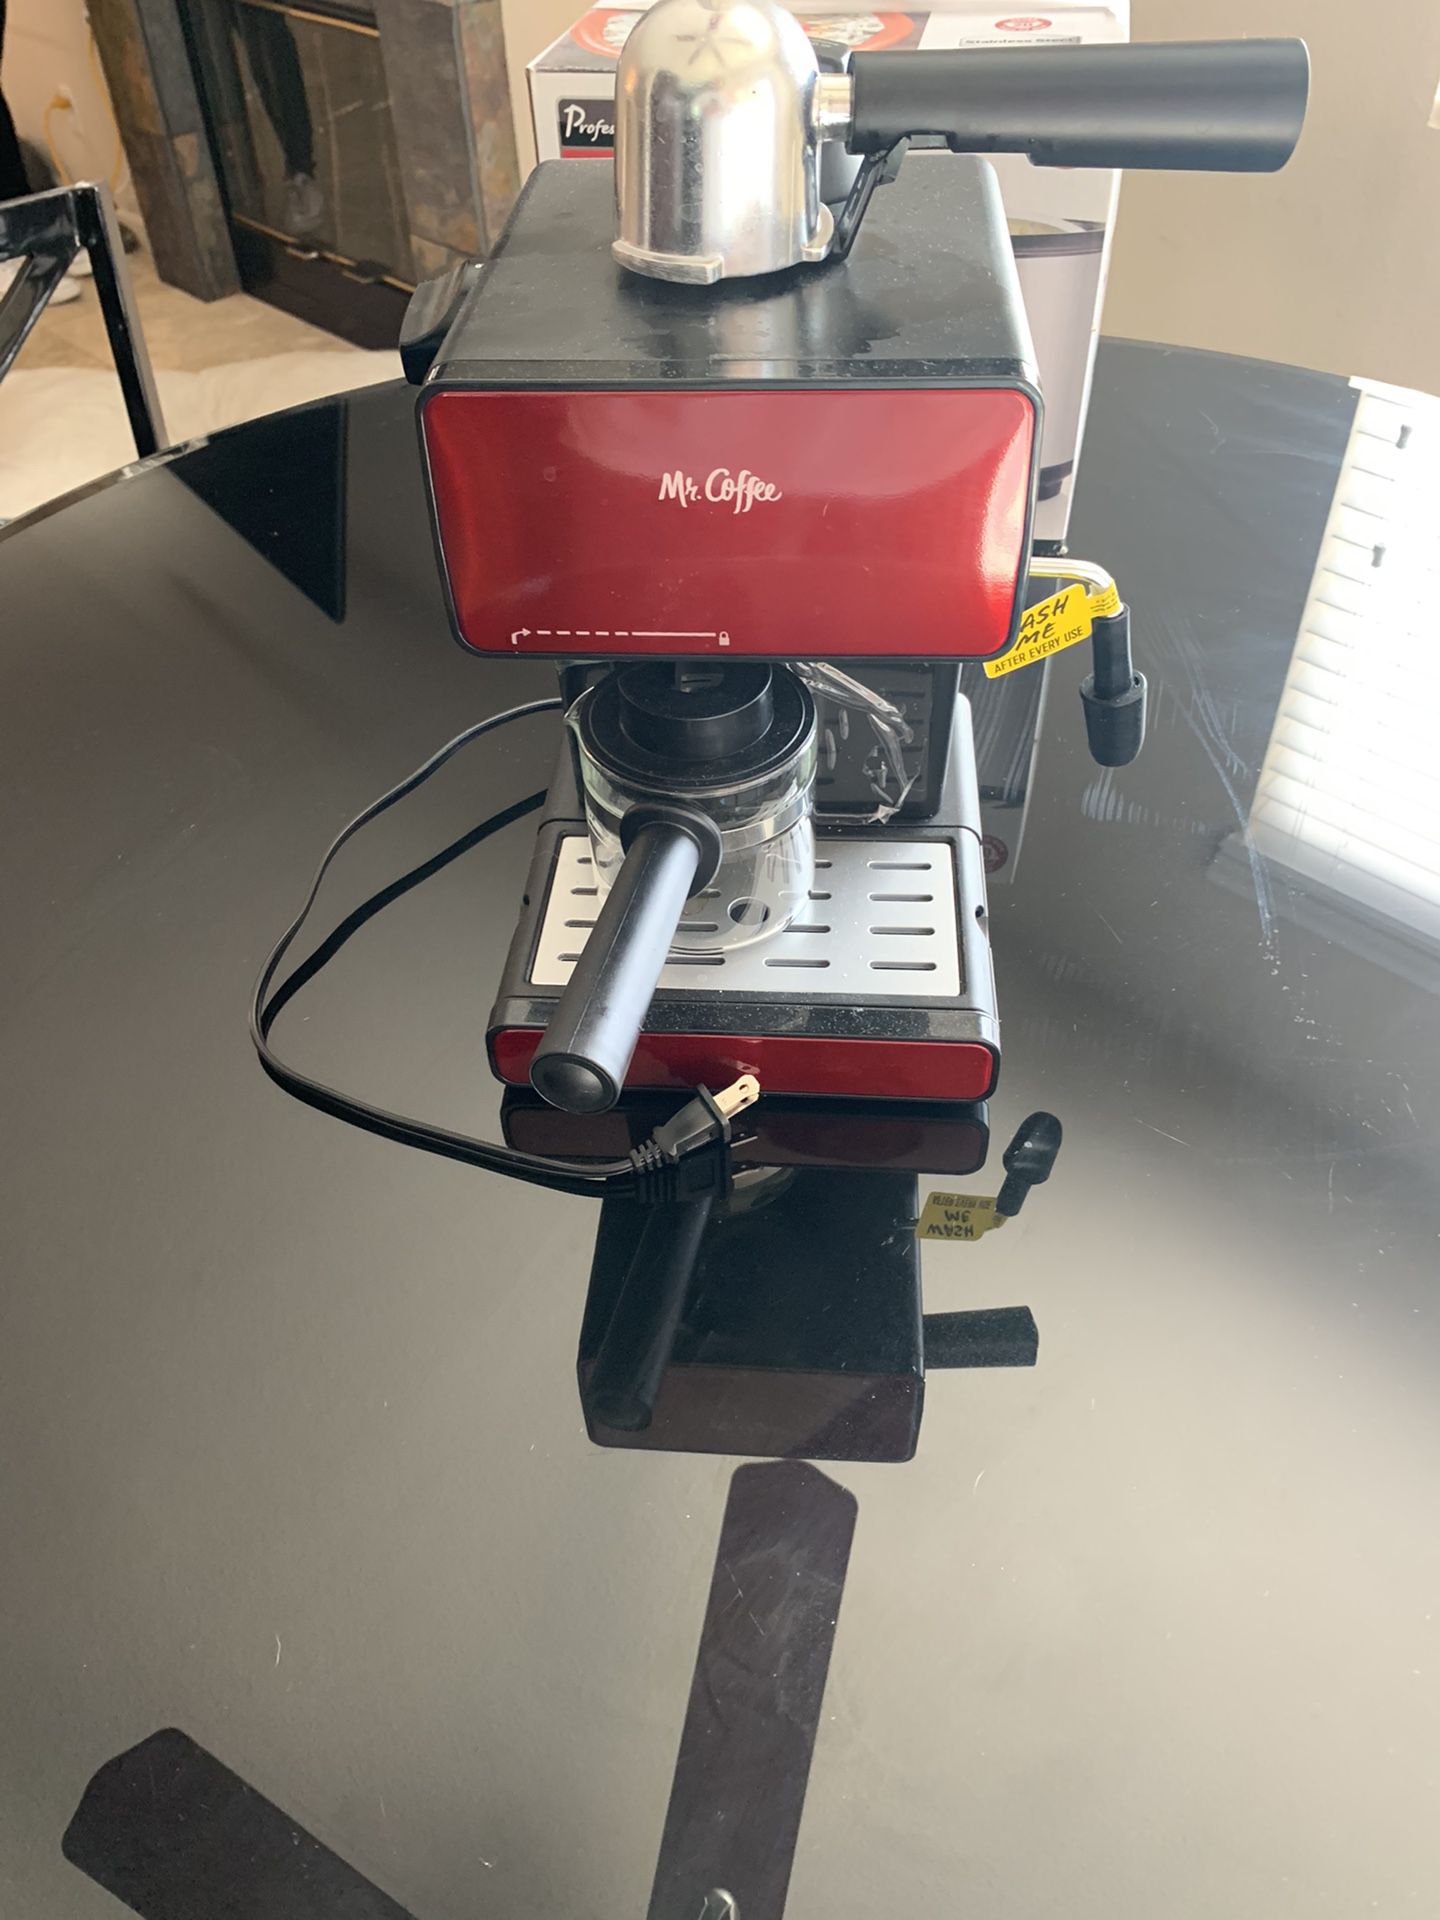 Mr coffee espresso maker